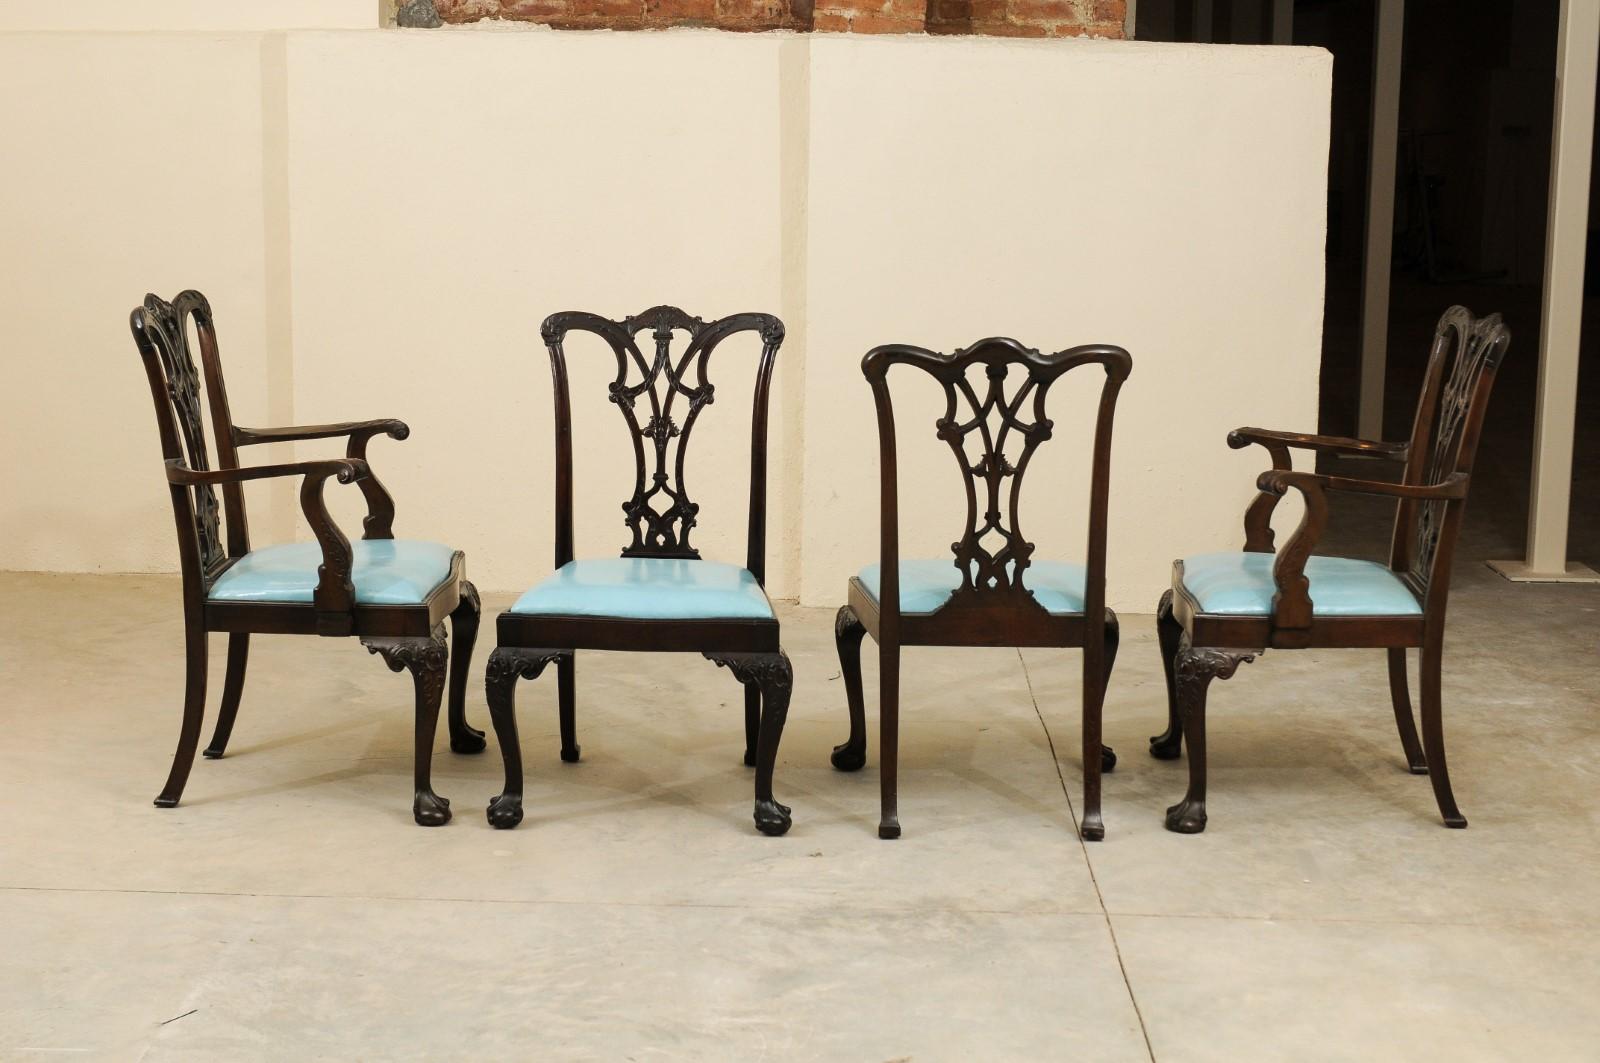 Die Mahagoni-Esszimmerstühle im Chippendale-Stil mit 2 Armlehnstühlen und 10 Beistellstühlen haben durchbrochene schwarze Sitzflächen, abnehmbare hellblaue Ledersitze und geschnitzte Cabriole-Beine mit Kugel- und Krallenfüßen. 

Arms Abmessungen